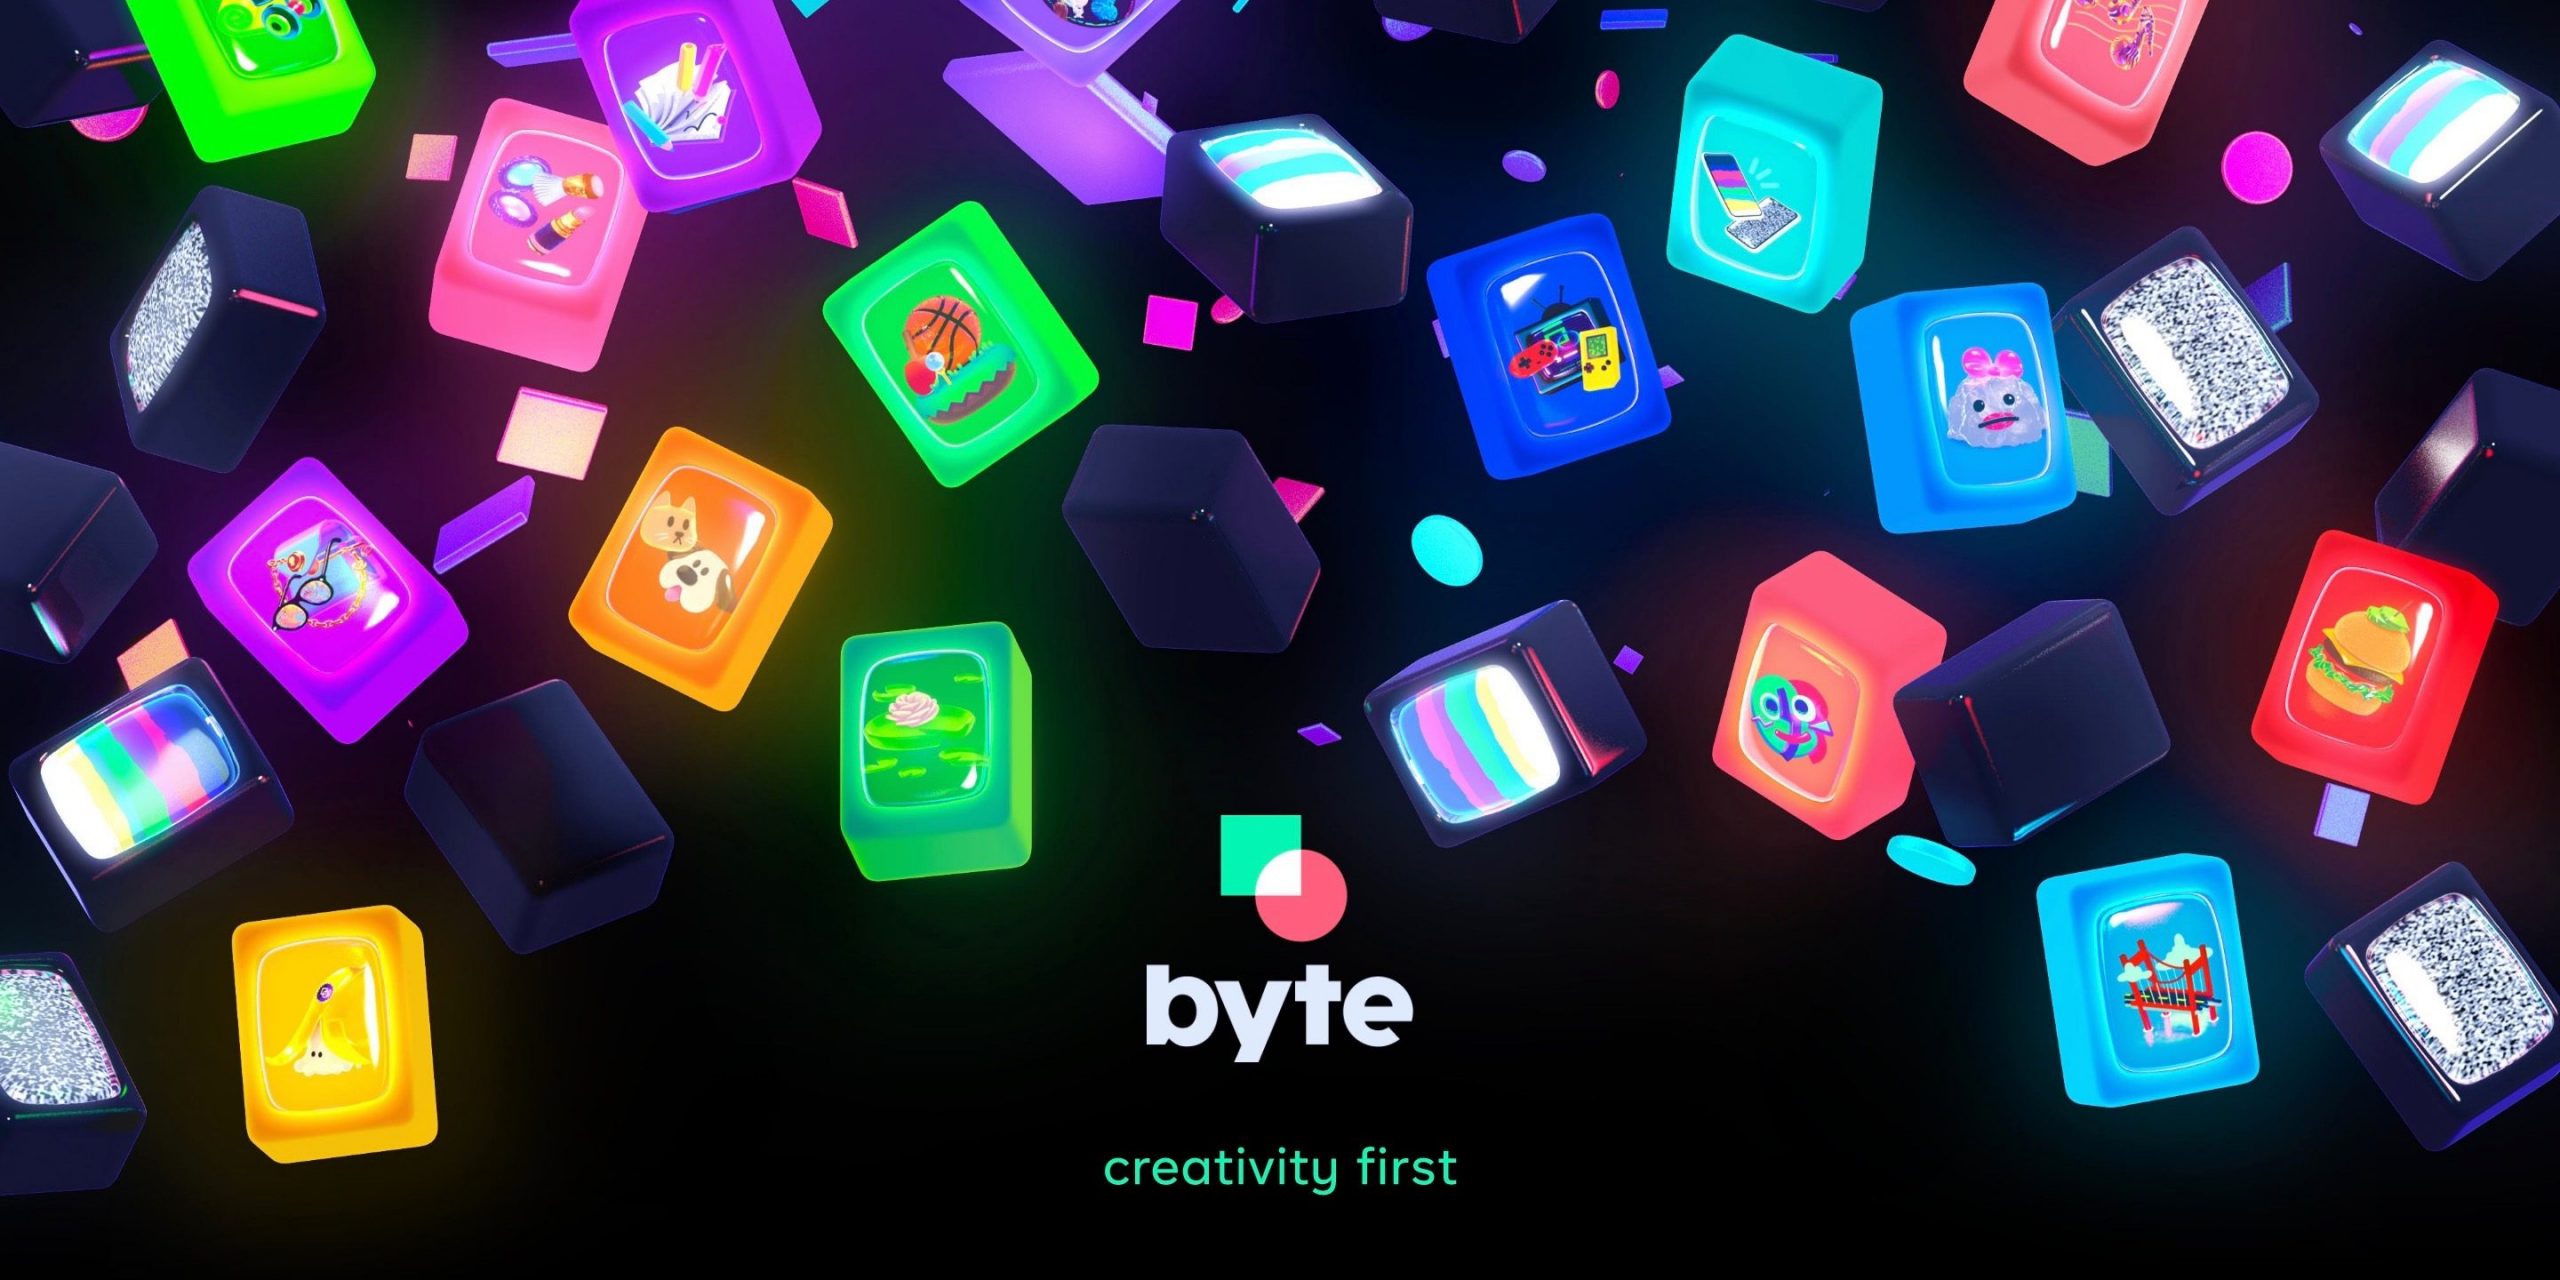 'Byte' traz de volta Vine's 6segundos vídeos, lançamentos no Android e iOS